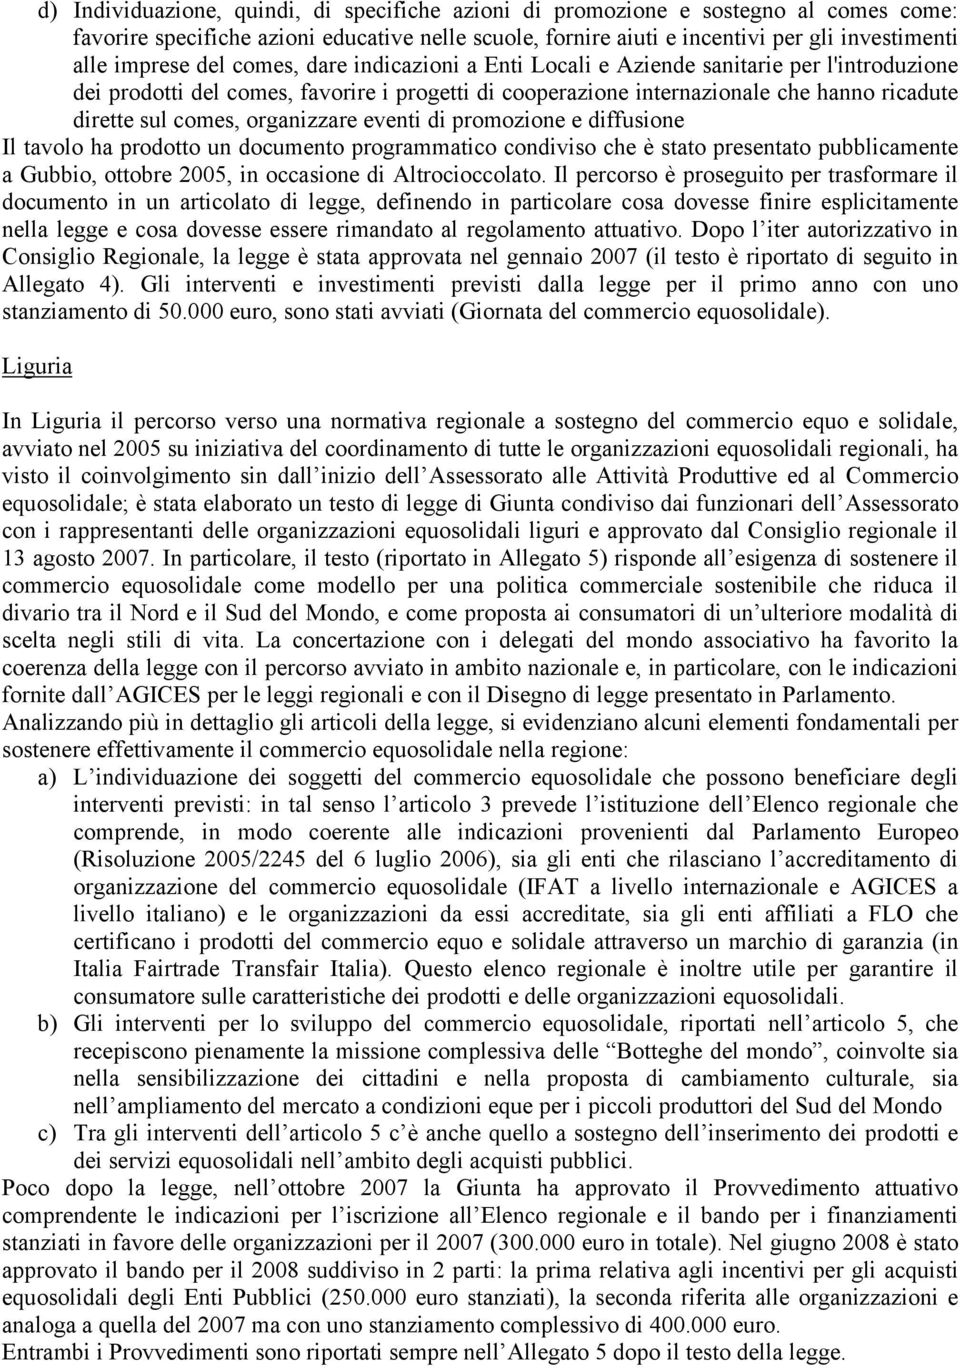 organizzare eventi di promozione e diffusione Il tavolo ha prodotto un documento programmatico condiviso che è stato presentato pubblicamente a Gubbio, ottobre 2005, in occasione di Altrocioccolato.